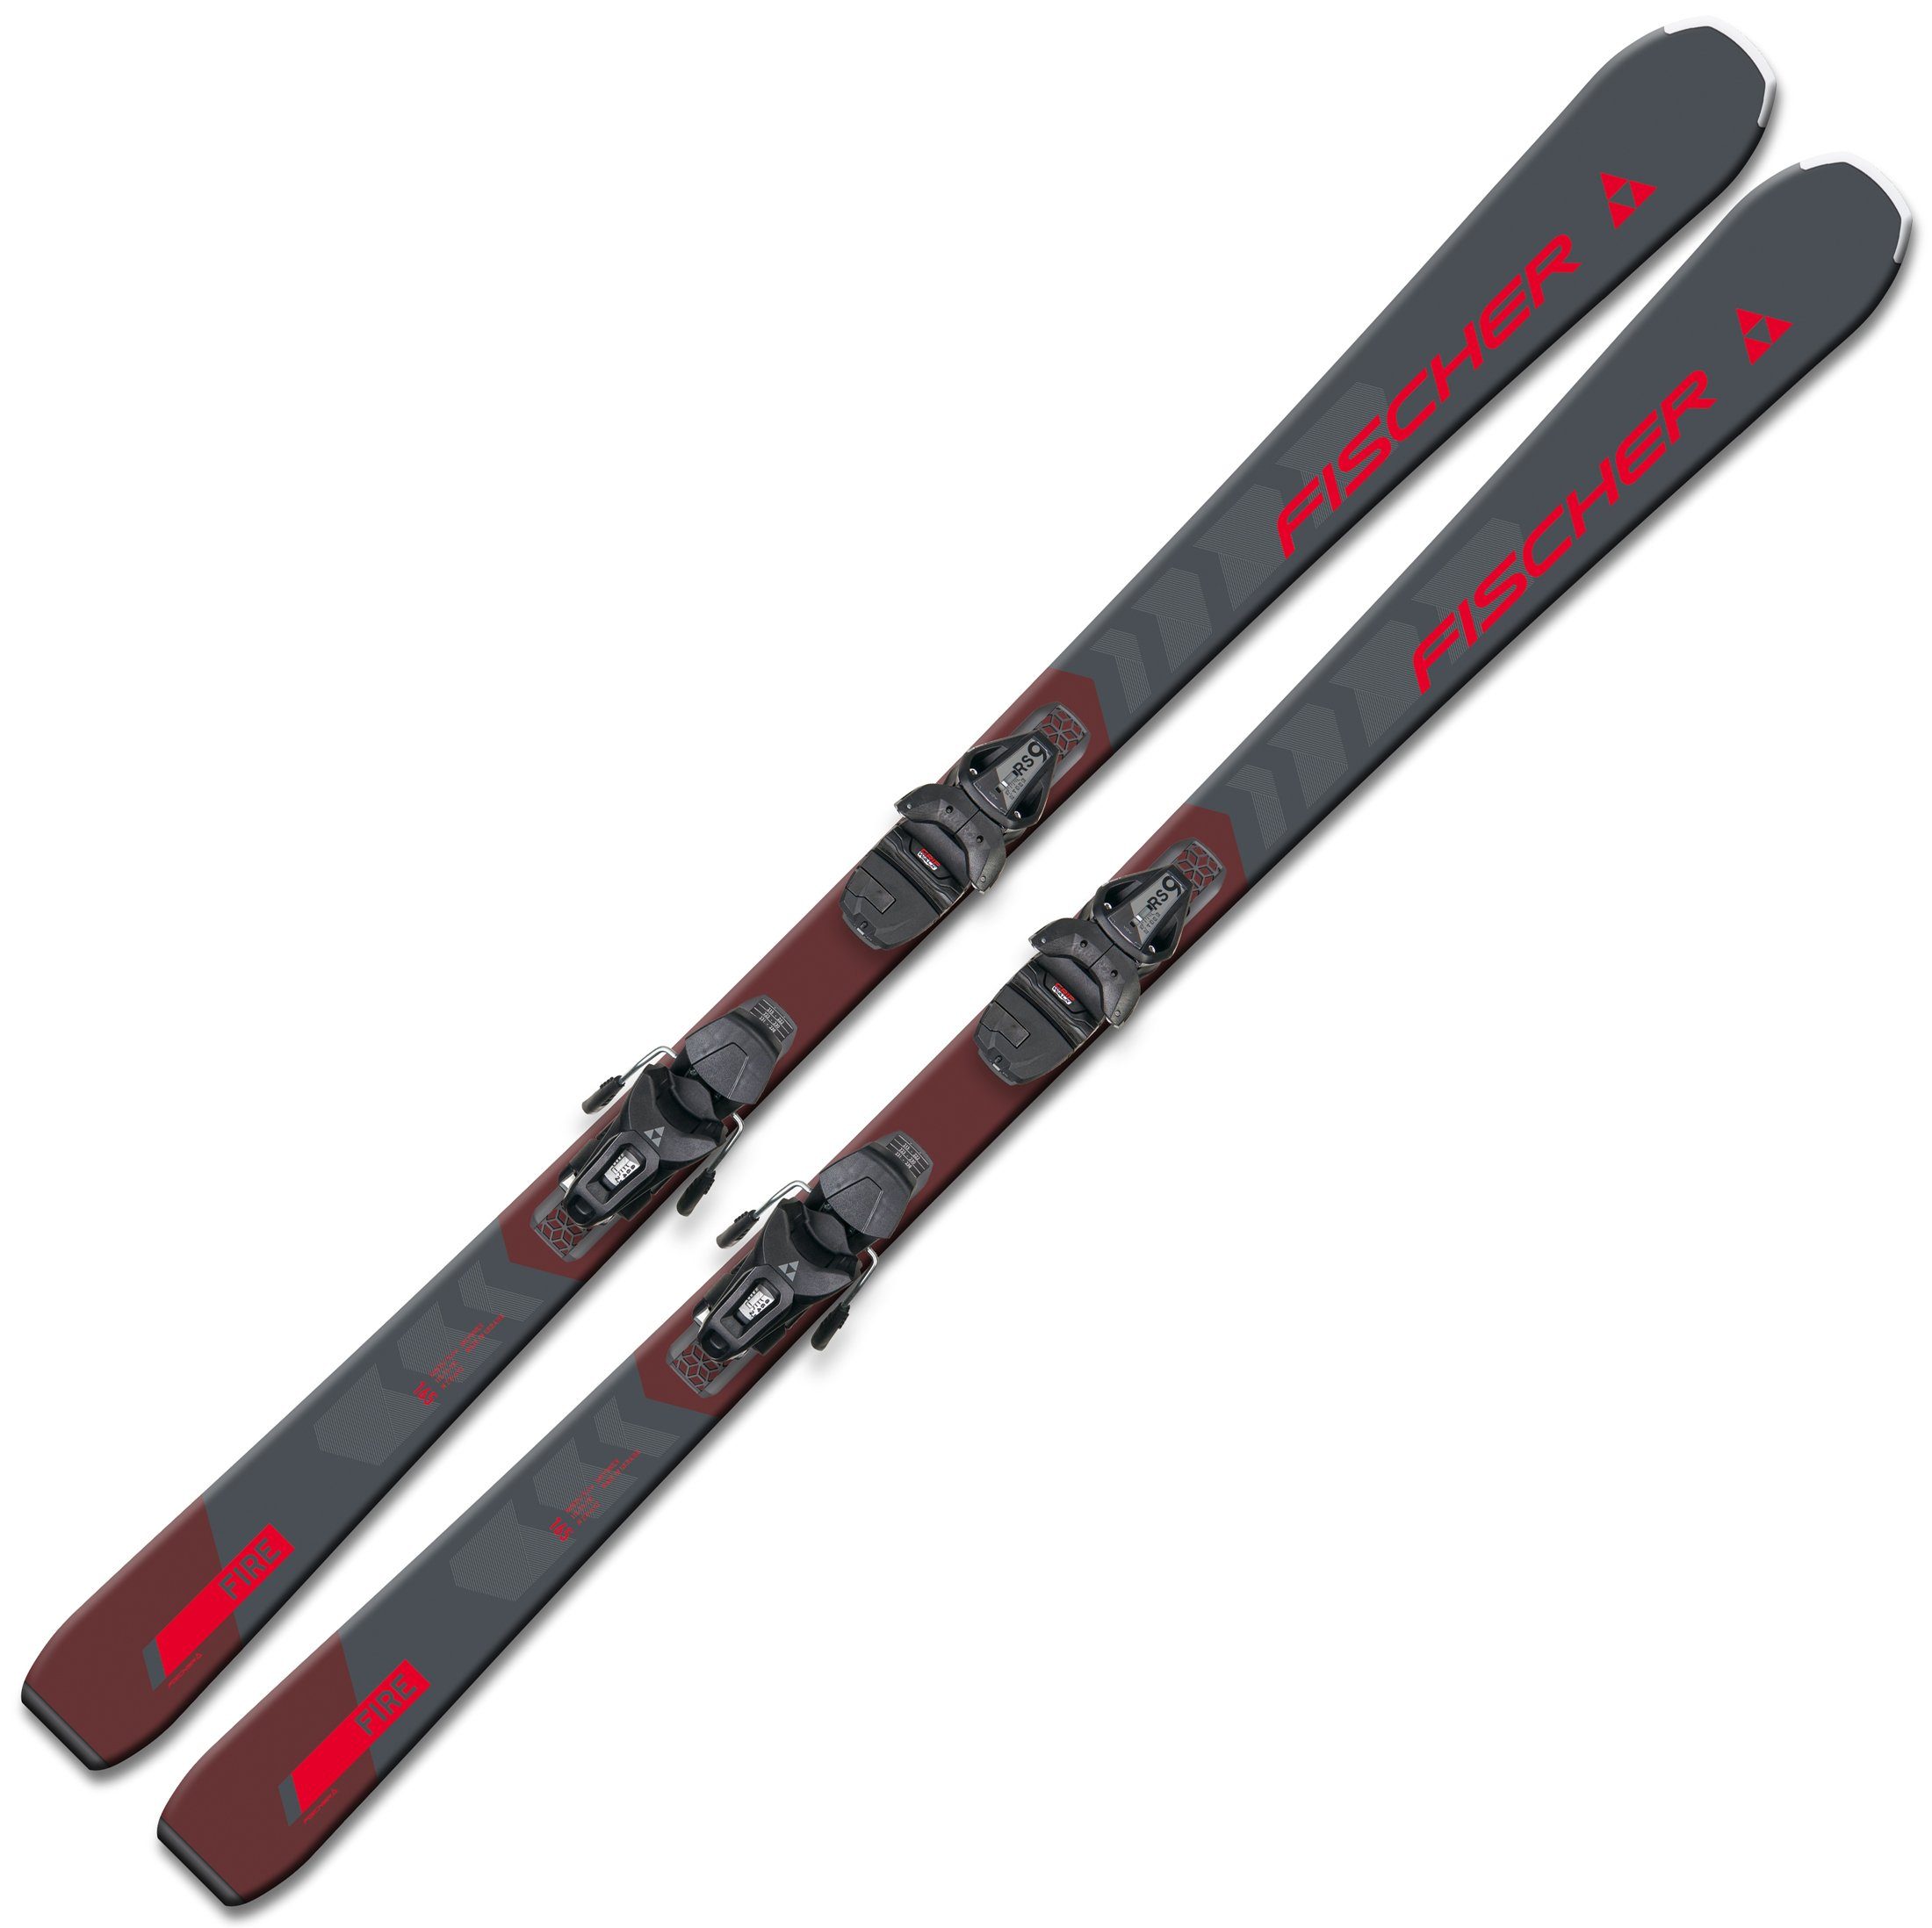 2024 Fischer Rocker + Sports Ski Bindung Z2,5-9 Fischer RS9 SLR Trend SLR Ski, RC